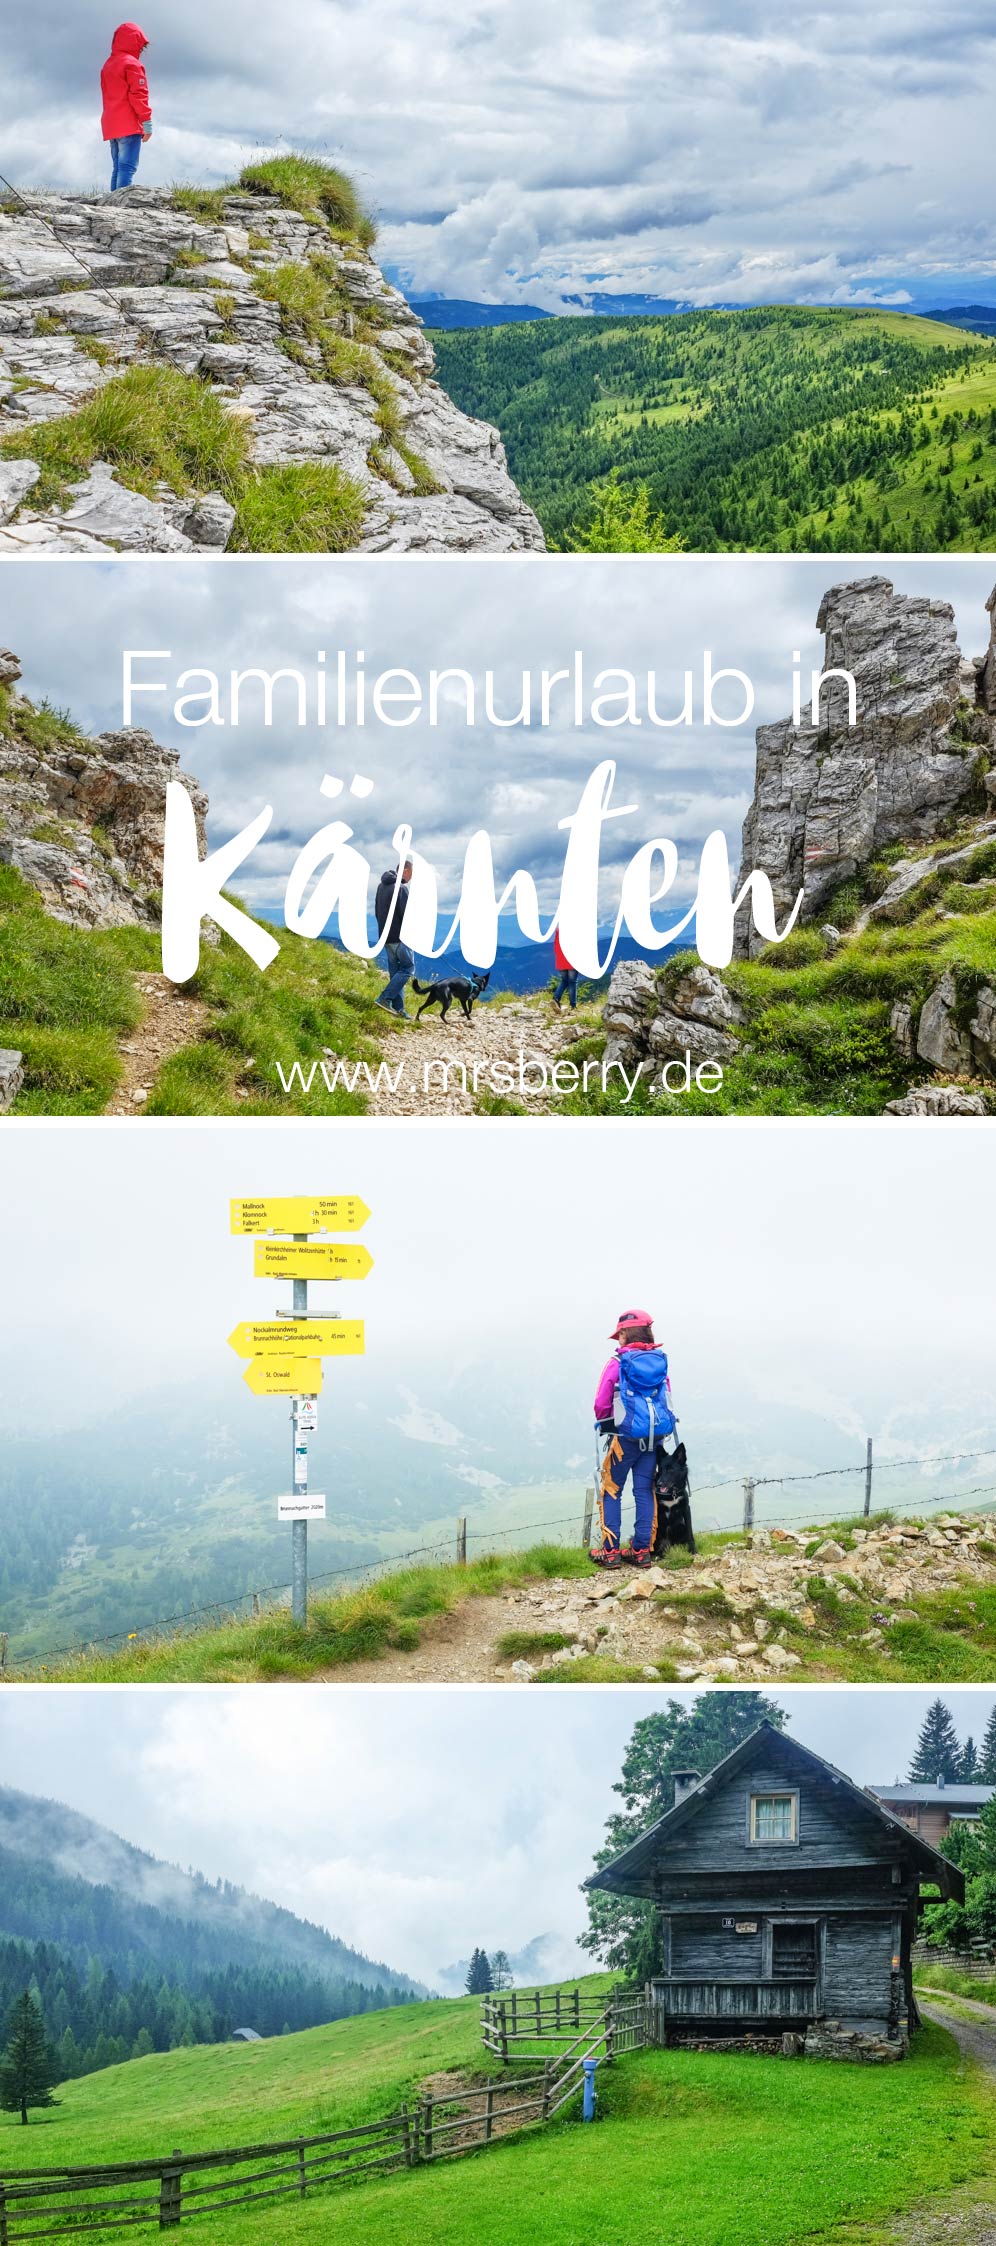 Familienurlaub in Kärnten - Feriendorf Kirchleitn mit Ranger Tagen für Kinder [Österreich, Wandern im Nockberge Nationalpark]